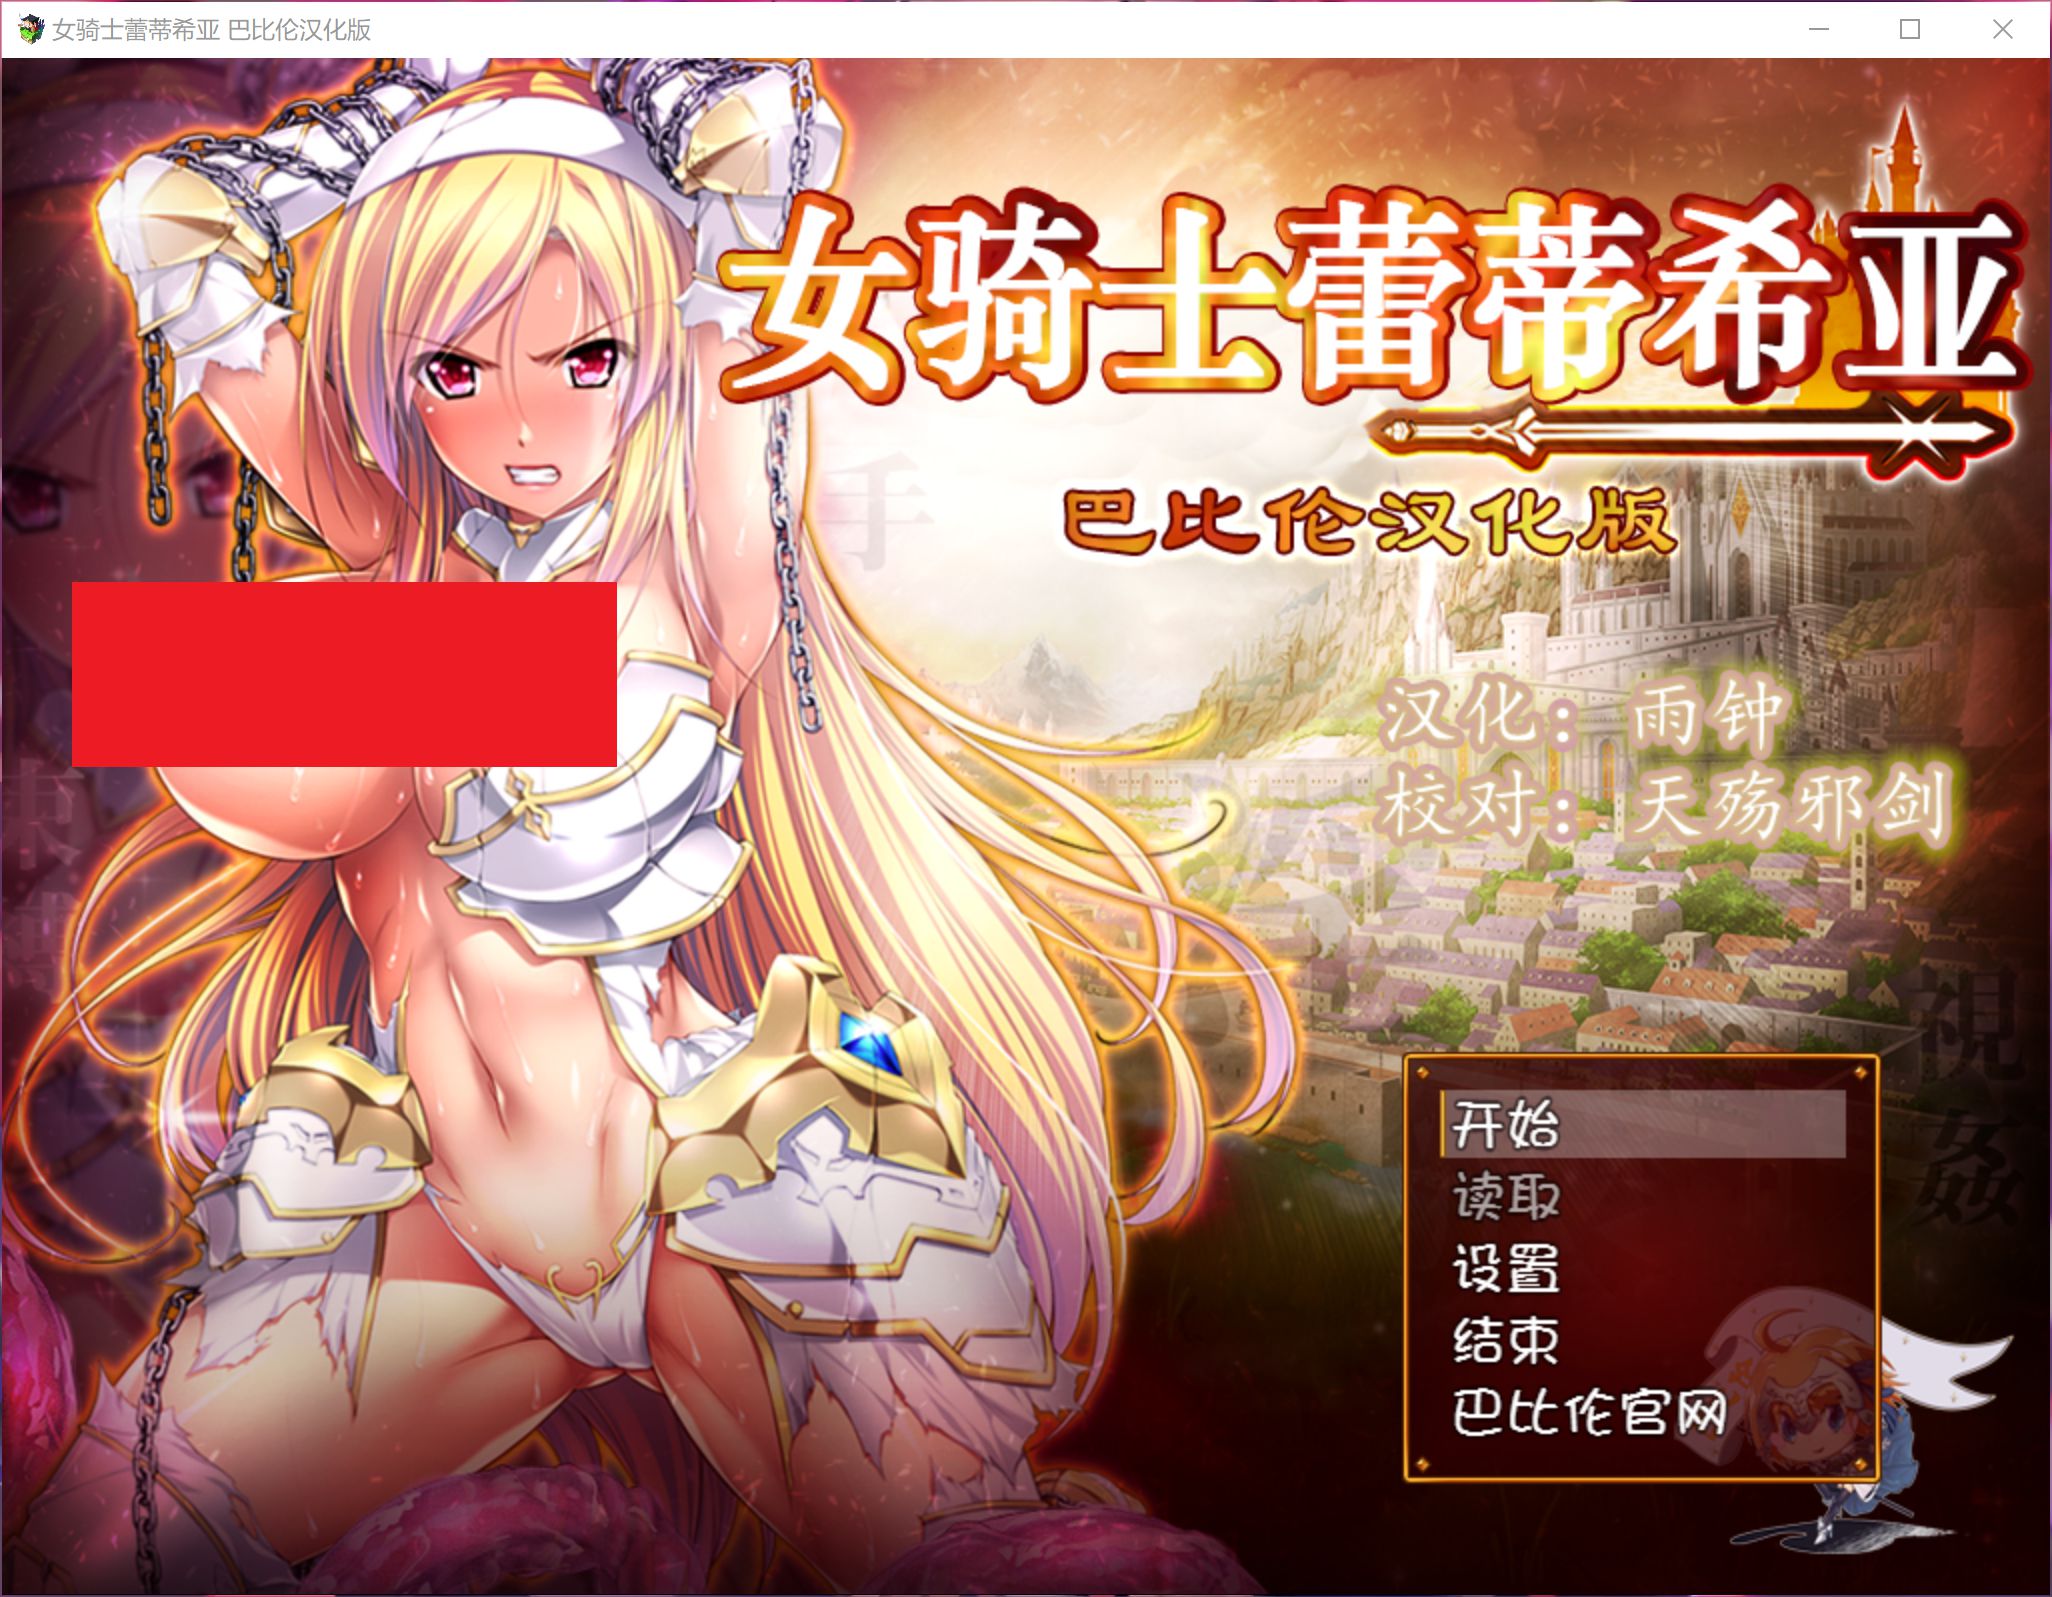 【大型RPG/汉化】女骑士蕾蒂西亚 V1.03 精修完整汉化修复版+全CG【新汉化/全CV/2.3G】-acgknow